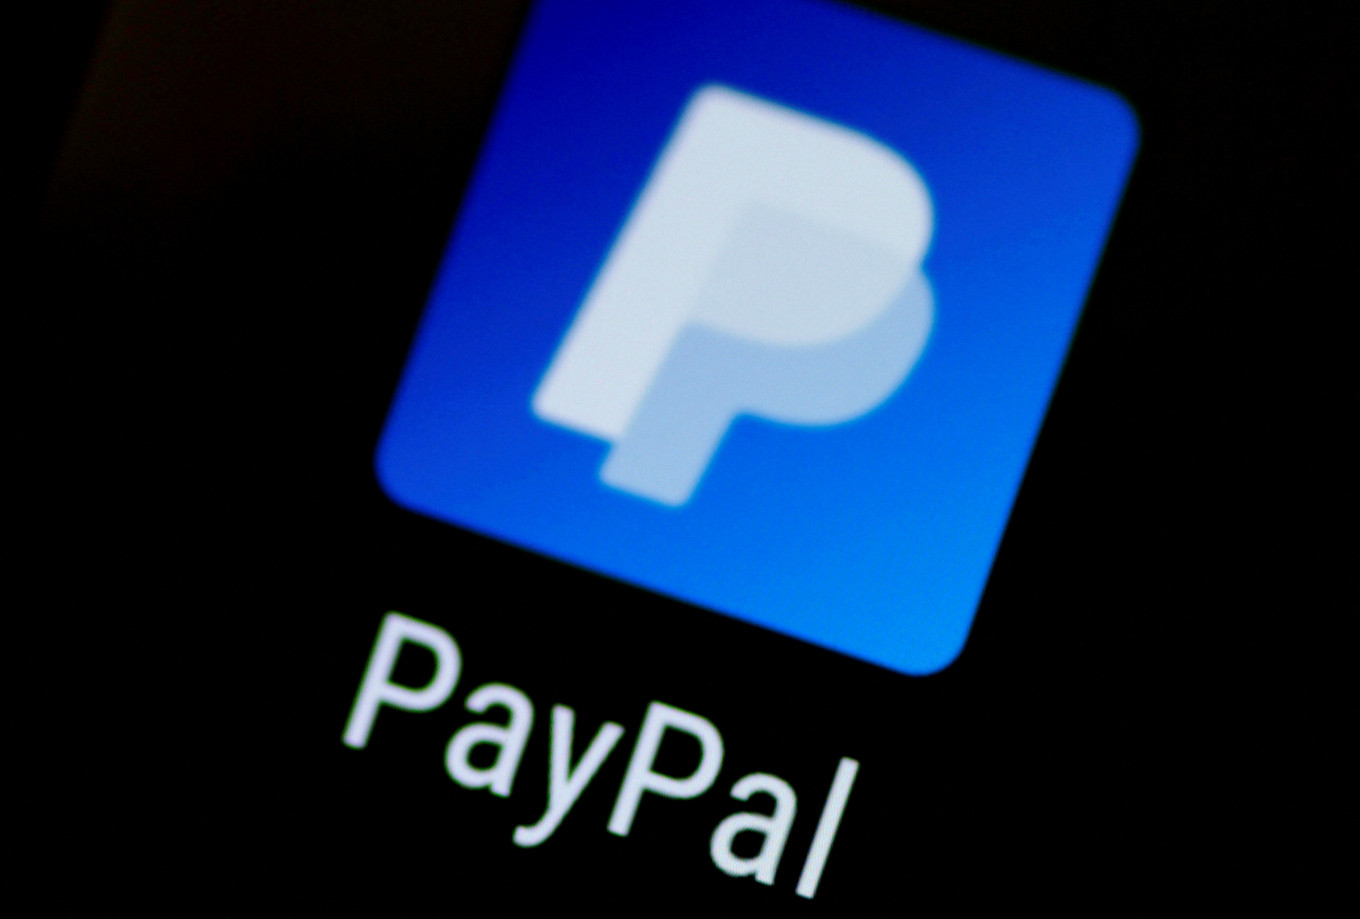 PayPal mendaftar di Indonesia, akses tidak terkunci, kata perusahaan